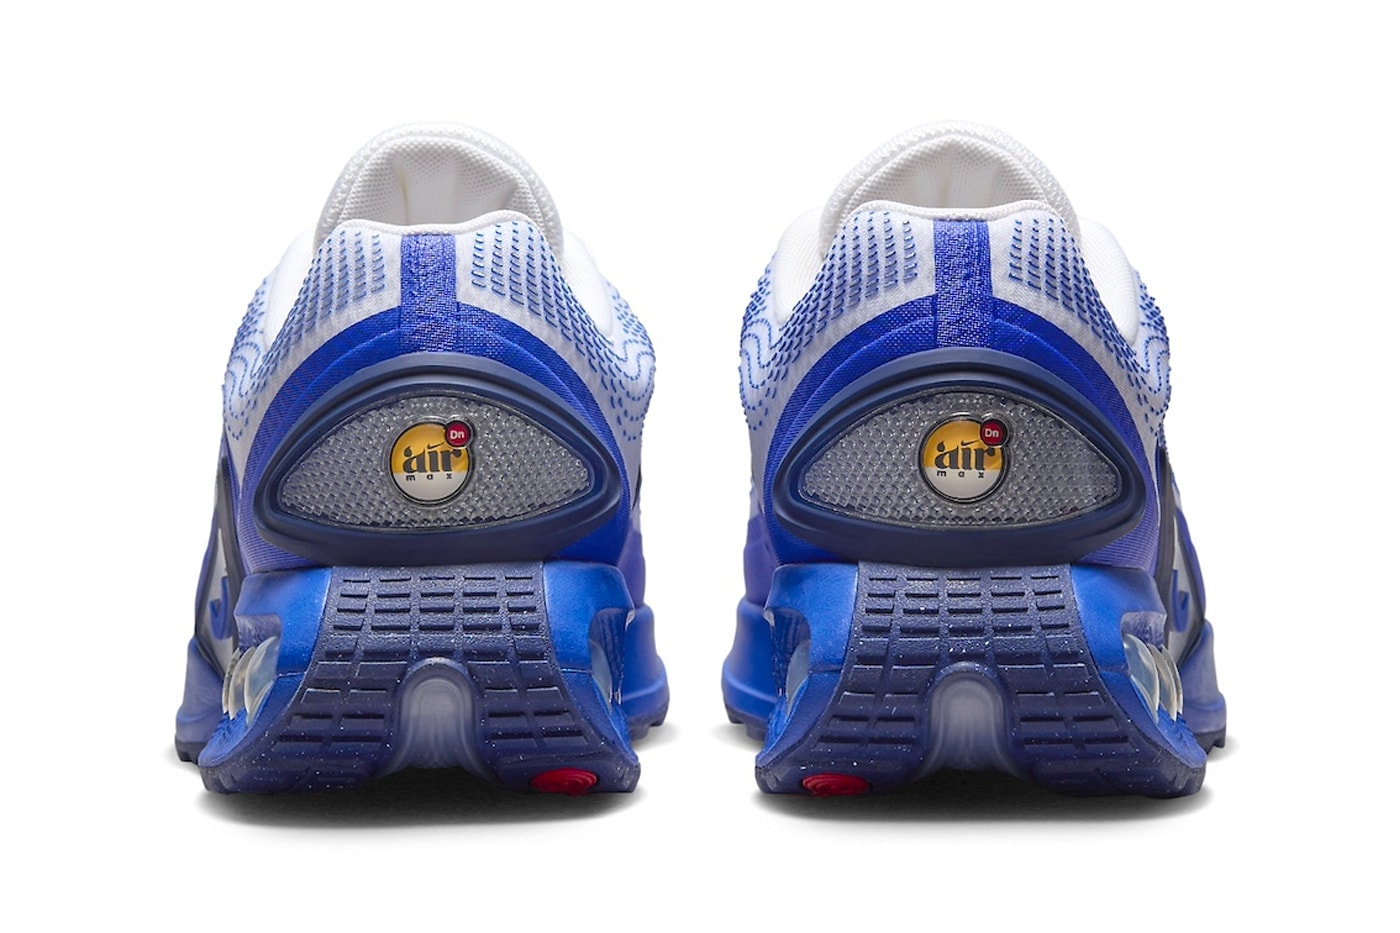 나이키 에어 맥스 Dn ‘화이트/레이서 블루’가 출시된다, Nike, Air Max, Air Max Dn, 나이키 에어 맥스, 레이서 블루, 에어 맥스 신발